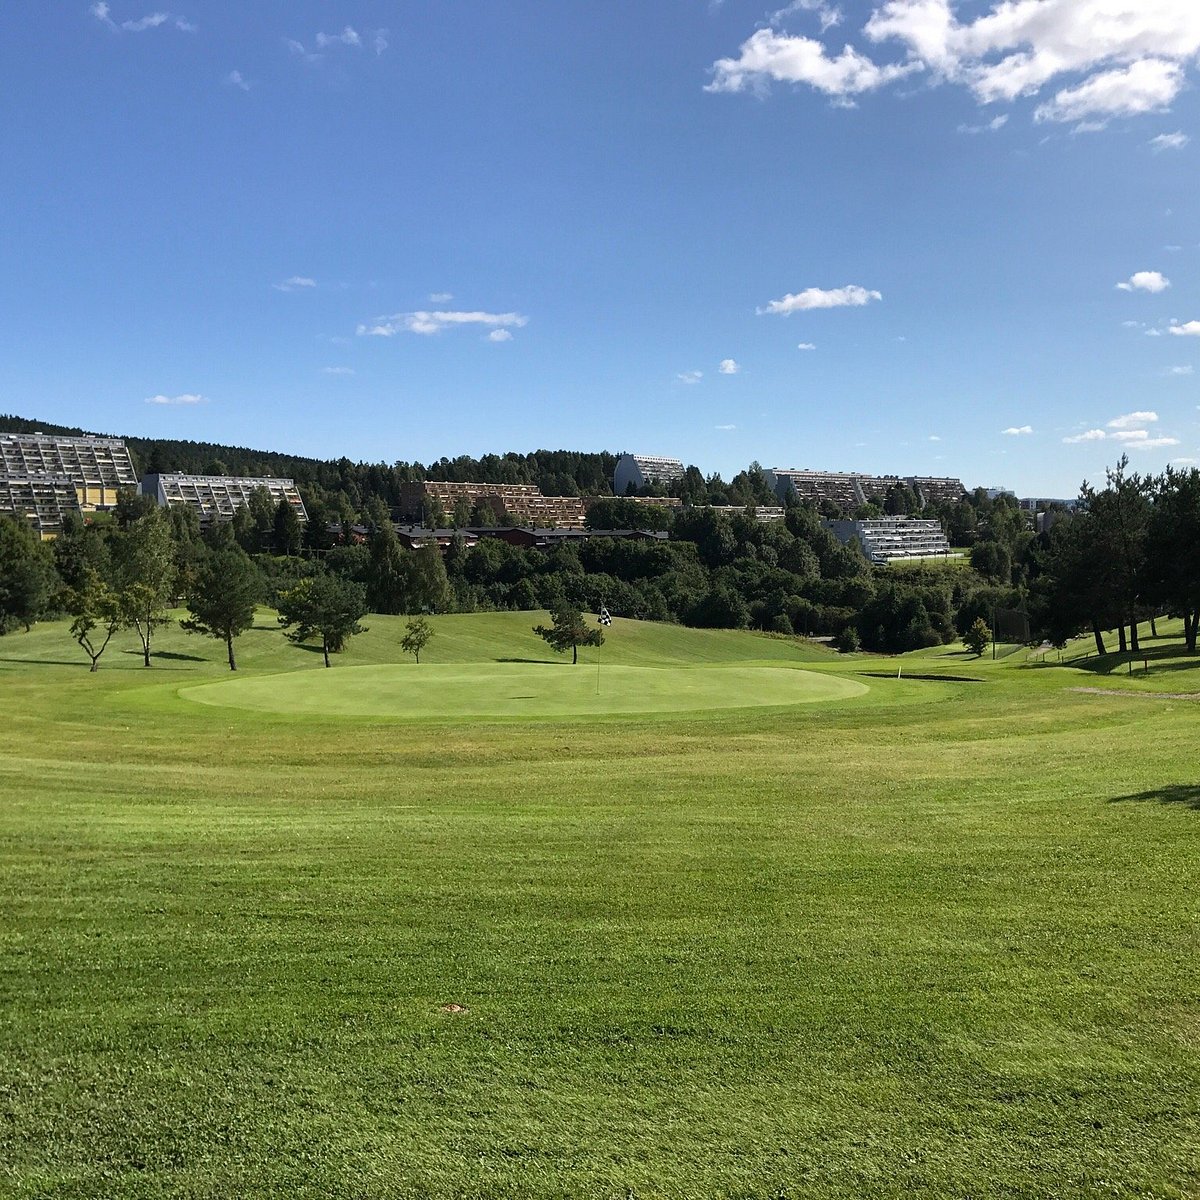 Jabeth Wilson finansiel Broom Groruddalen Golfklubb (Oslo, Norge) - Anmeldelser - Tripadvisor